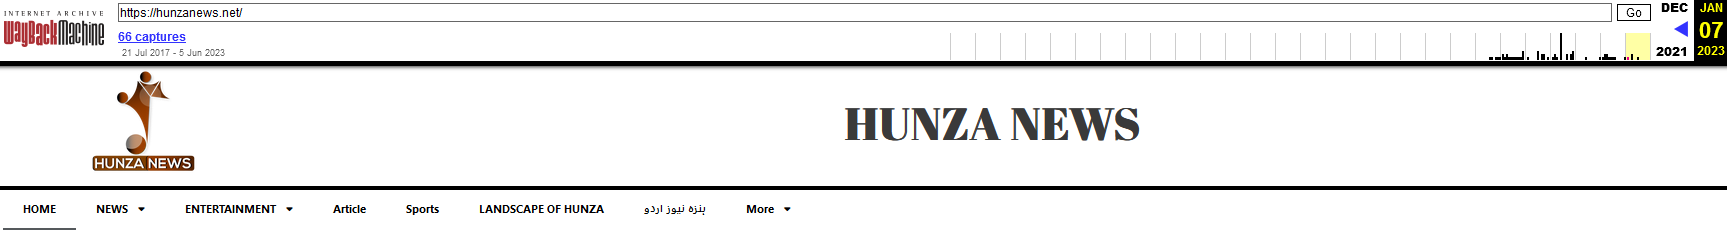 Kuva 4 Hunza News -uudistus ei lataussovellusta